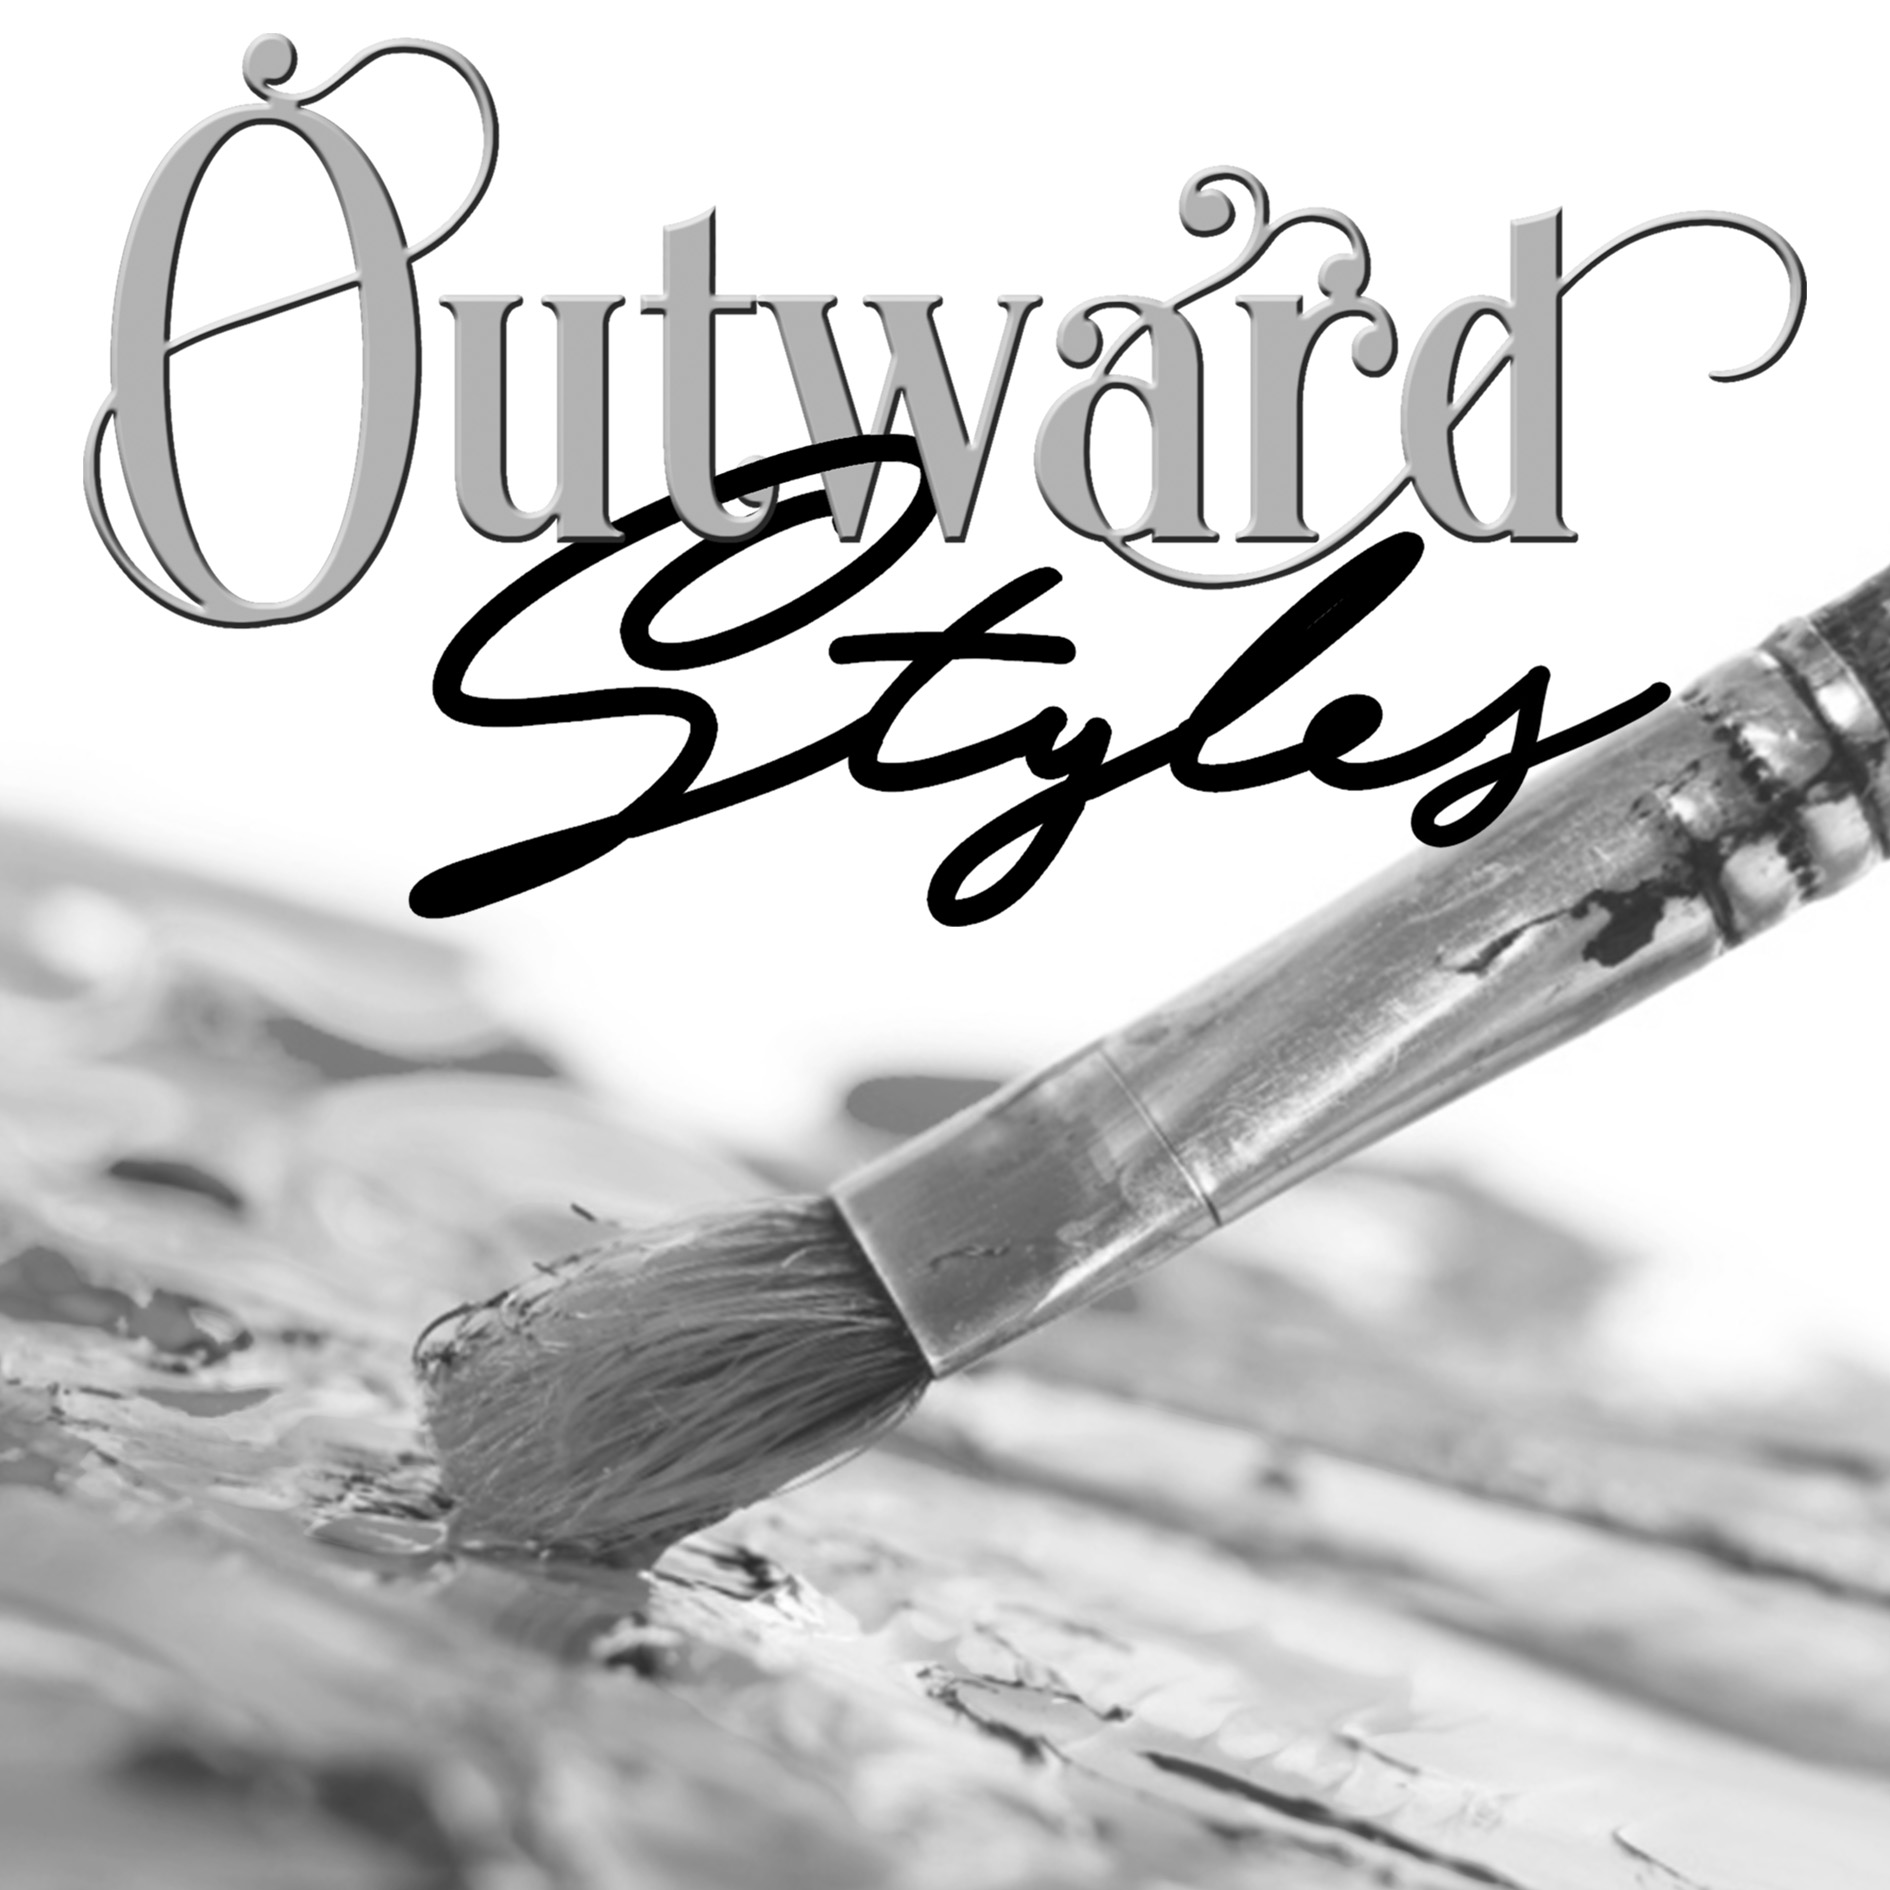 Outward Styles